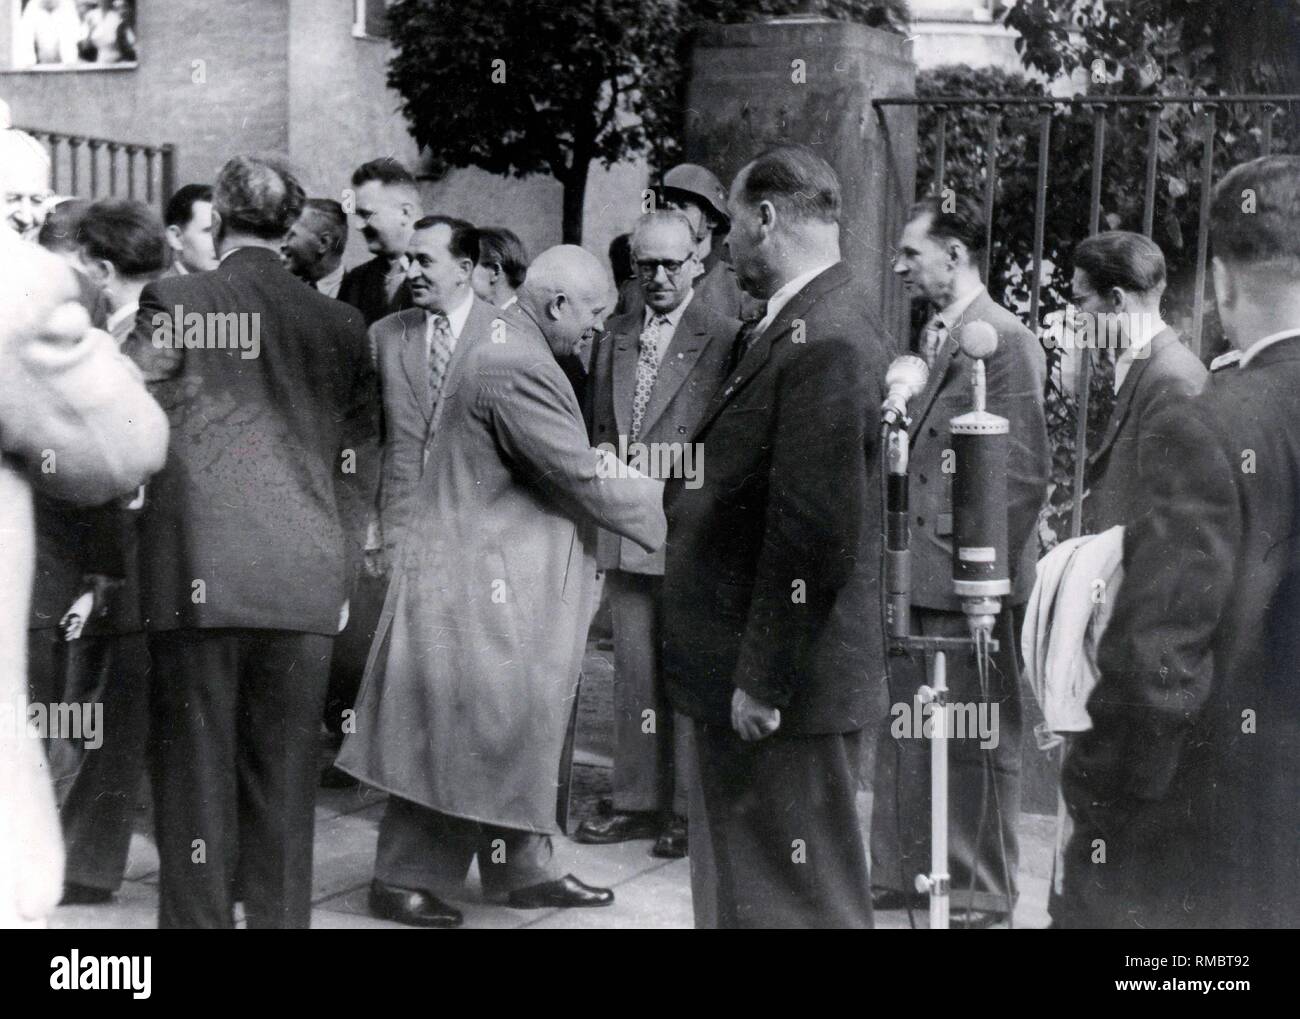 Nikita Sergejewitsch Chruschtschow (* 1894 - 1971) - Besuch des sowjetischen Parteichef in der DDR 1958, Chruschtschow Abschied von der DDR-Führung vor der Pension in Leipzig. Stockfoto